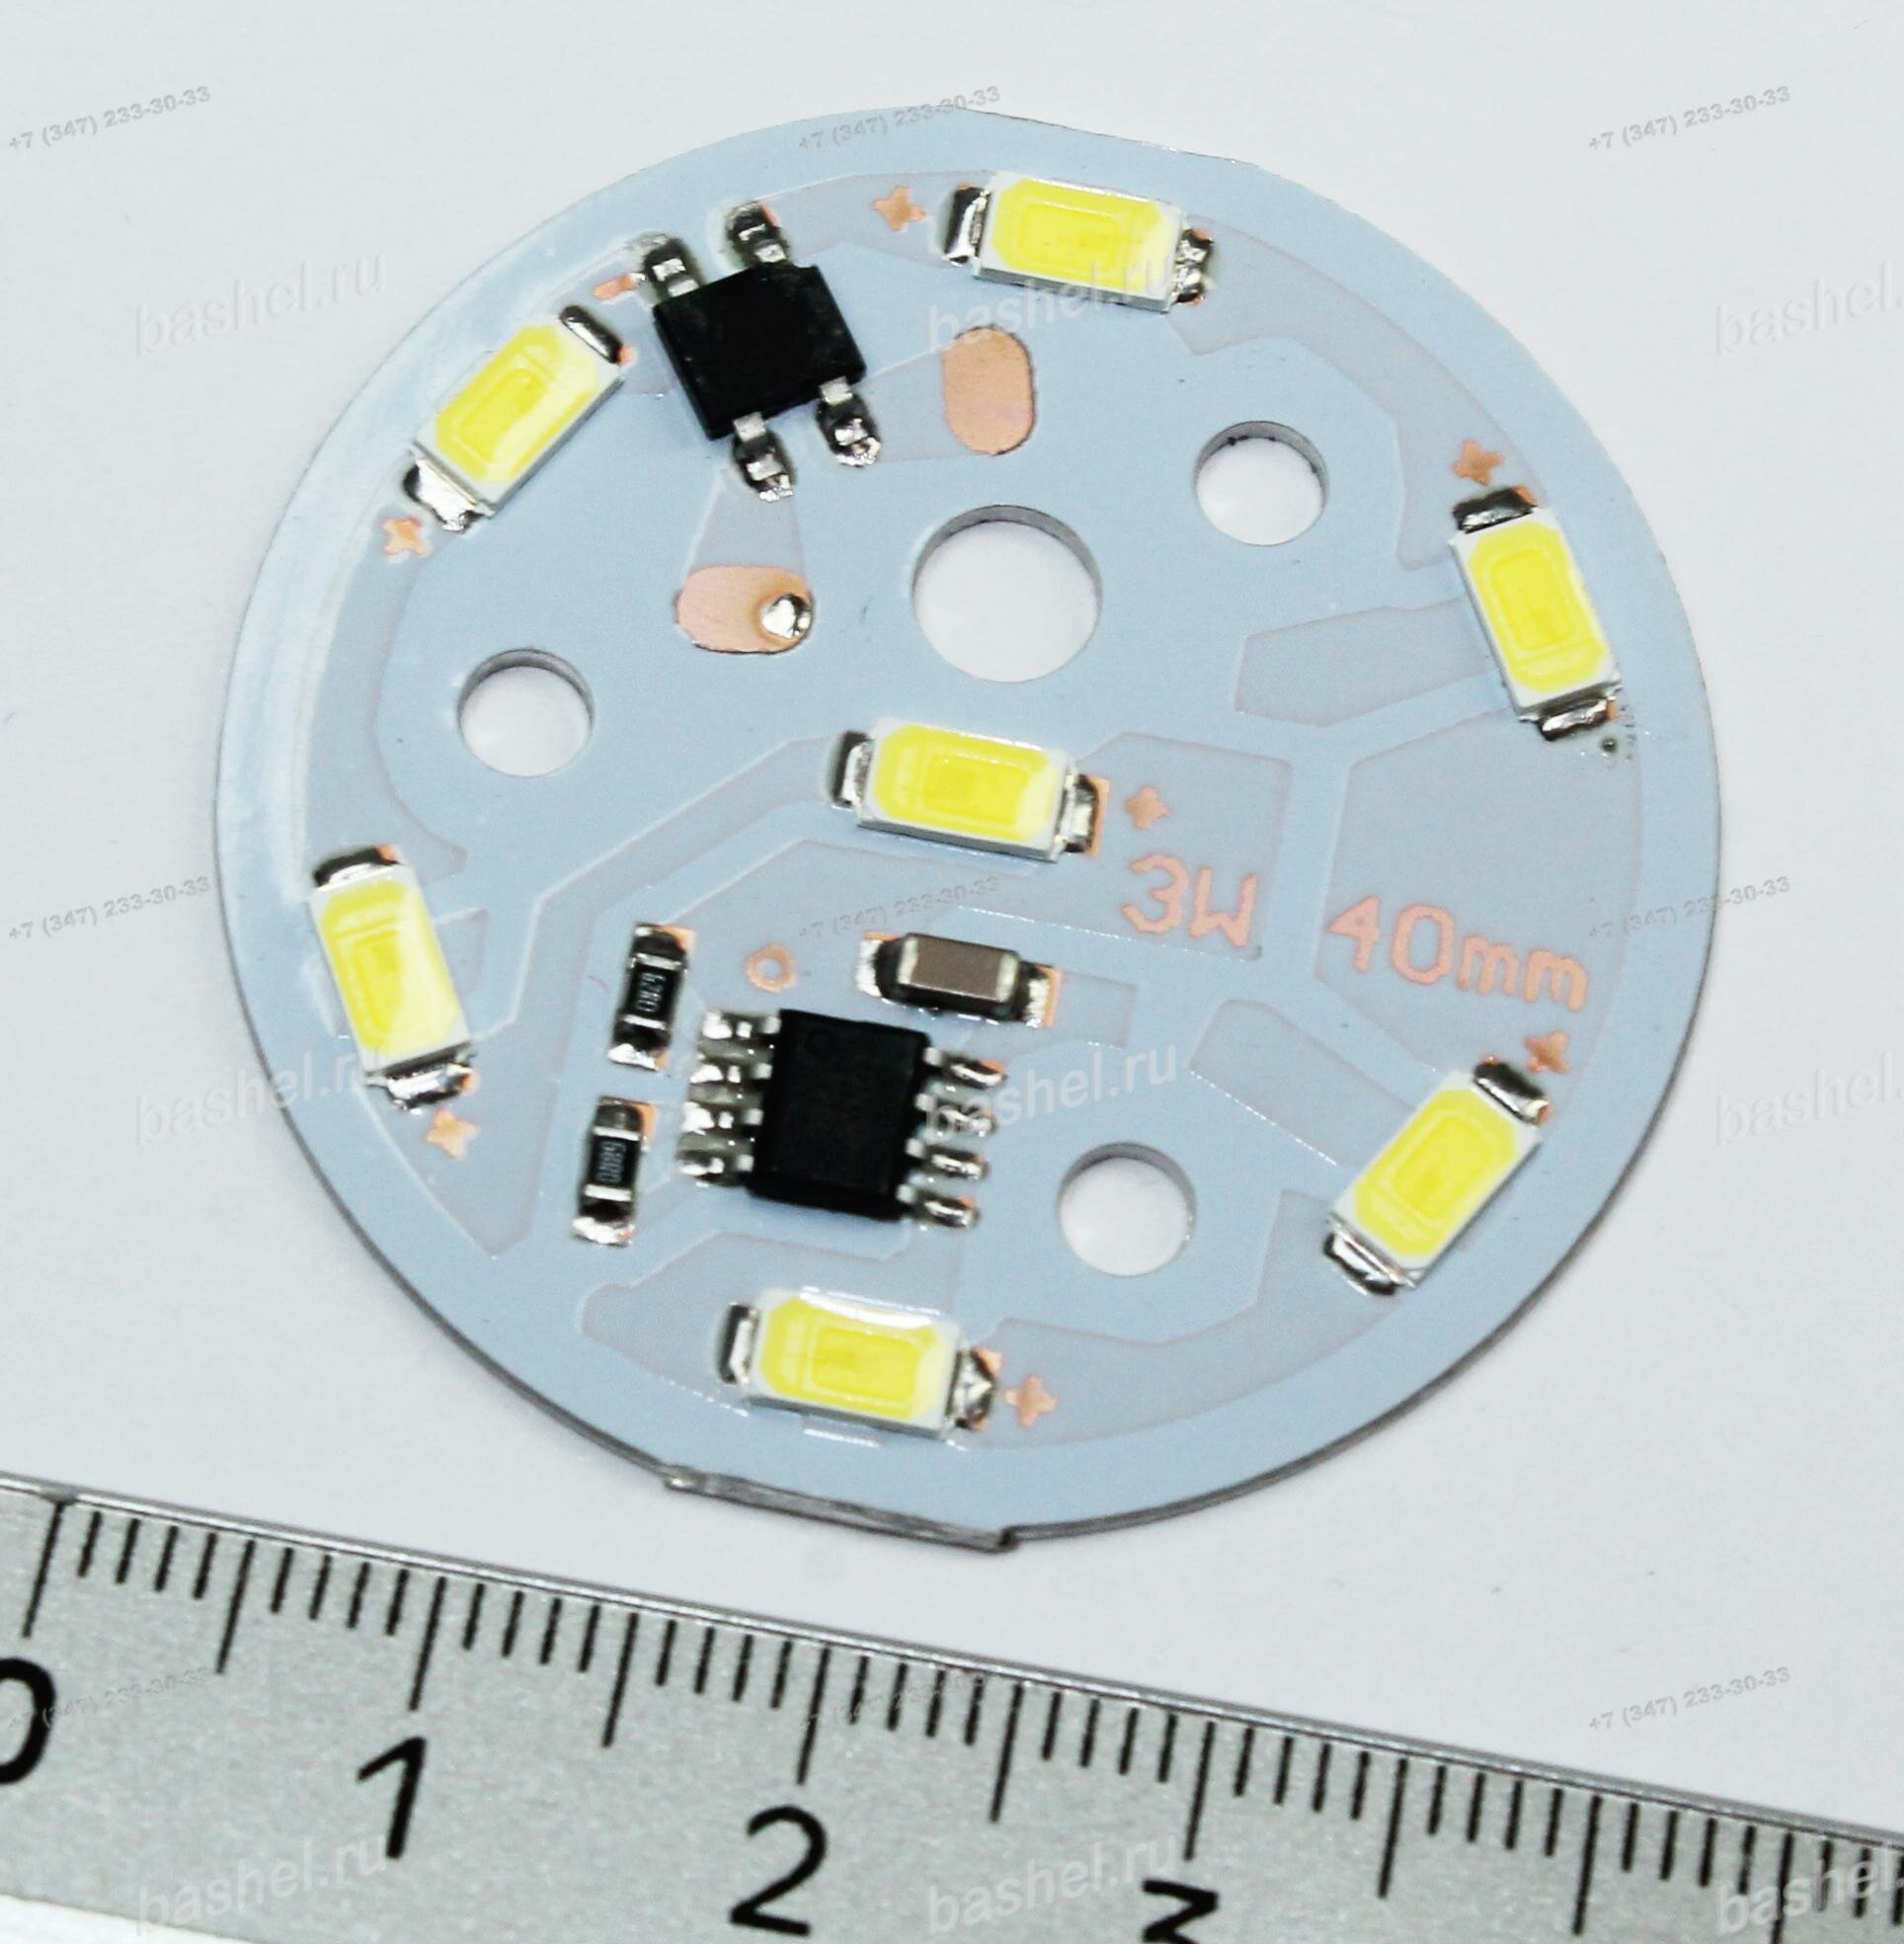 LED modul PCB-220-LM5730-7SMD-W 250Lm 3W 6000k White (D-40mm, 220V, прямого подключения) [83], Модуль светодиодный электротовар